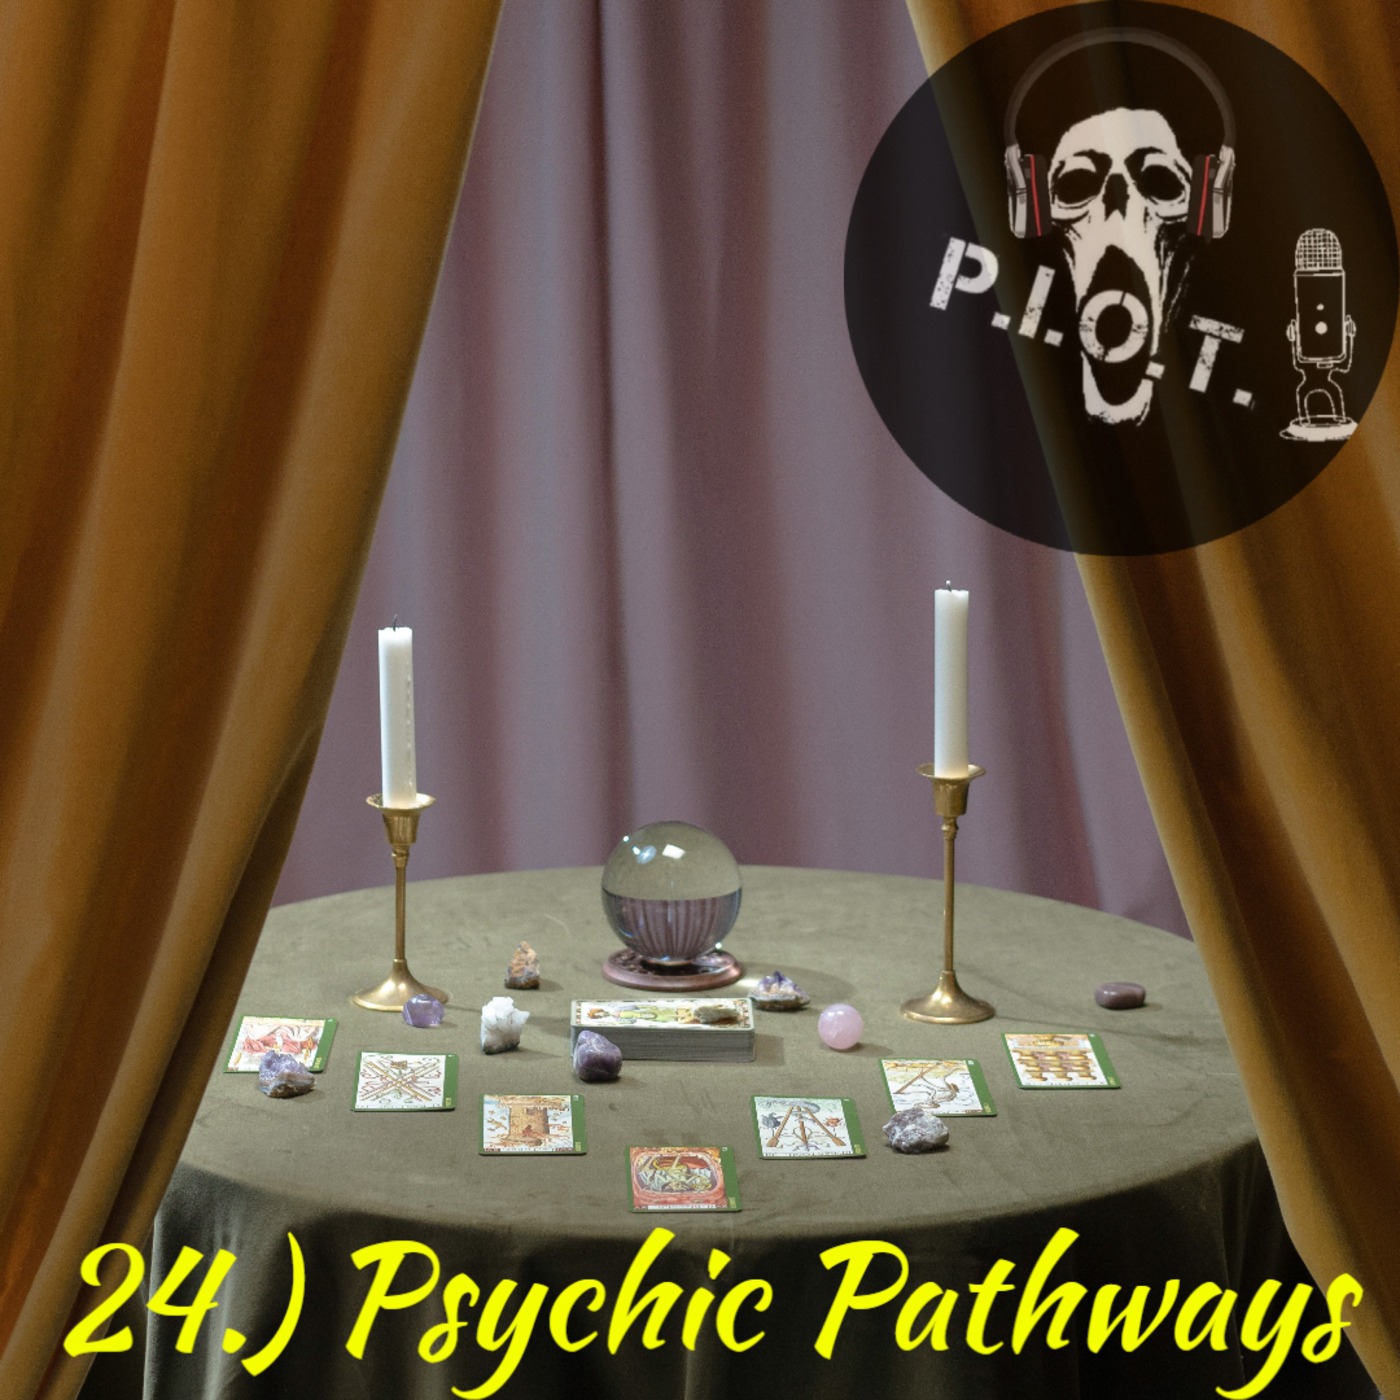 24.) Psychic Pathways